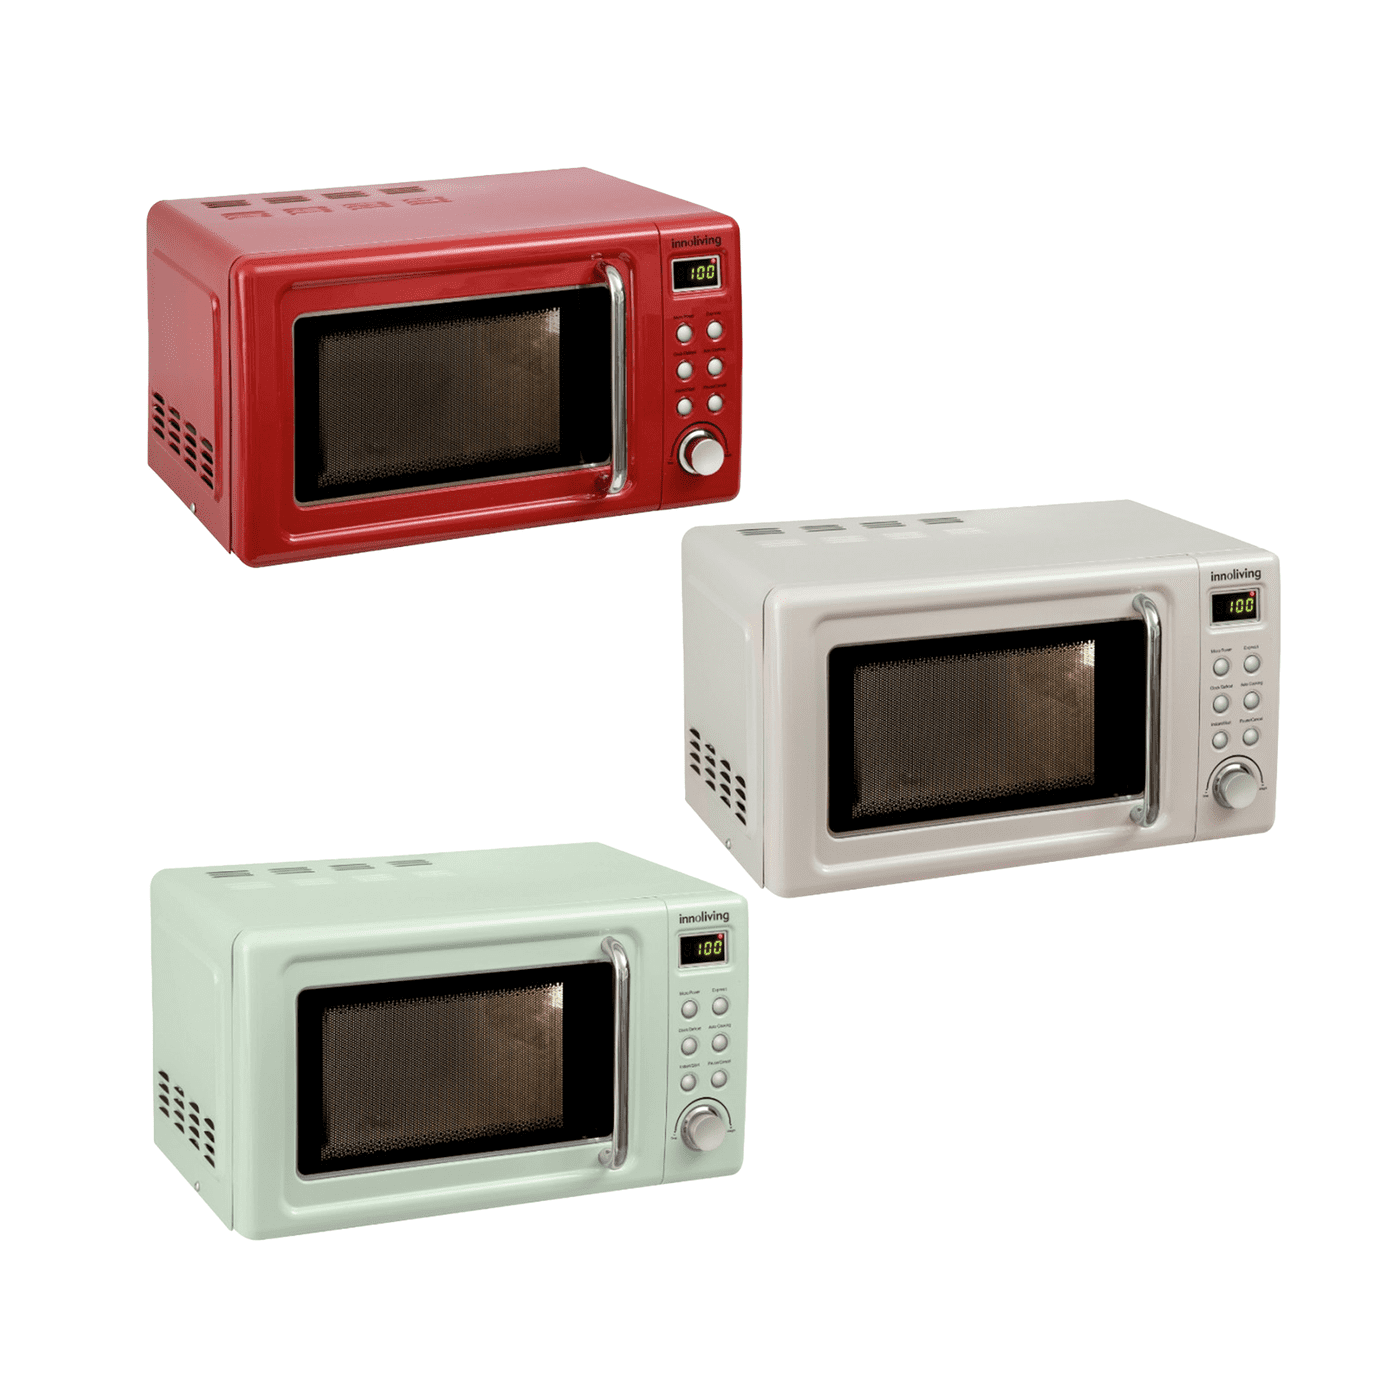 Forno microonde Vintage 20 litri funzione scongelamento e grill, Innoliving INN-861